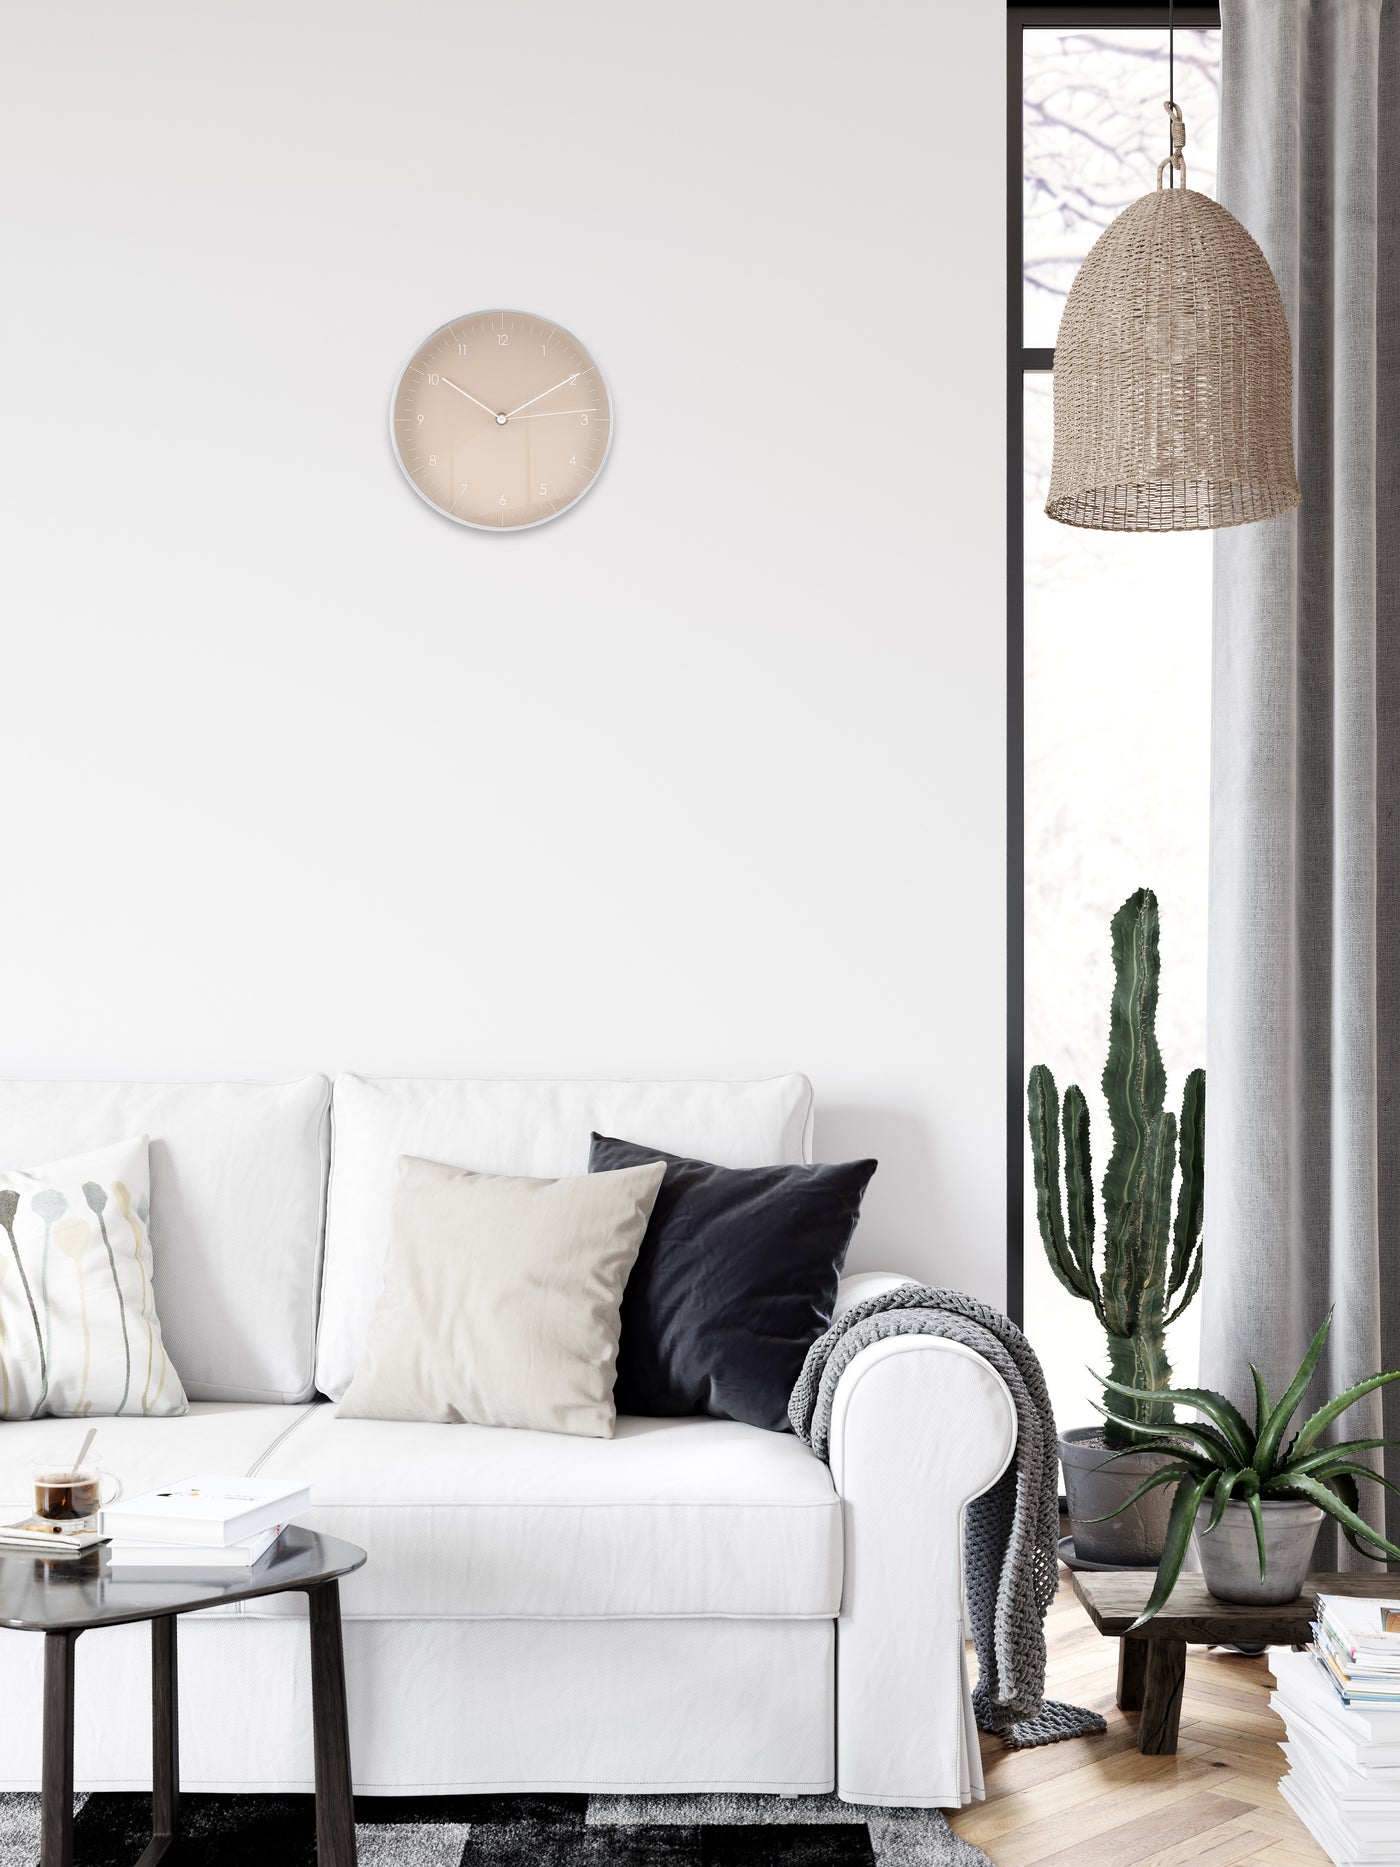 Elegante Wanduhr in Creme mit weißen Details und silbernem Gestell über Couch im Wohnzimmer